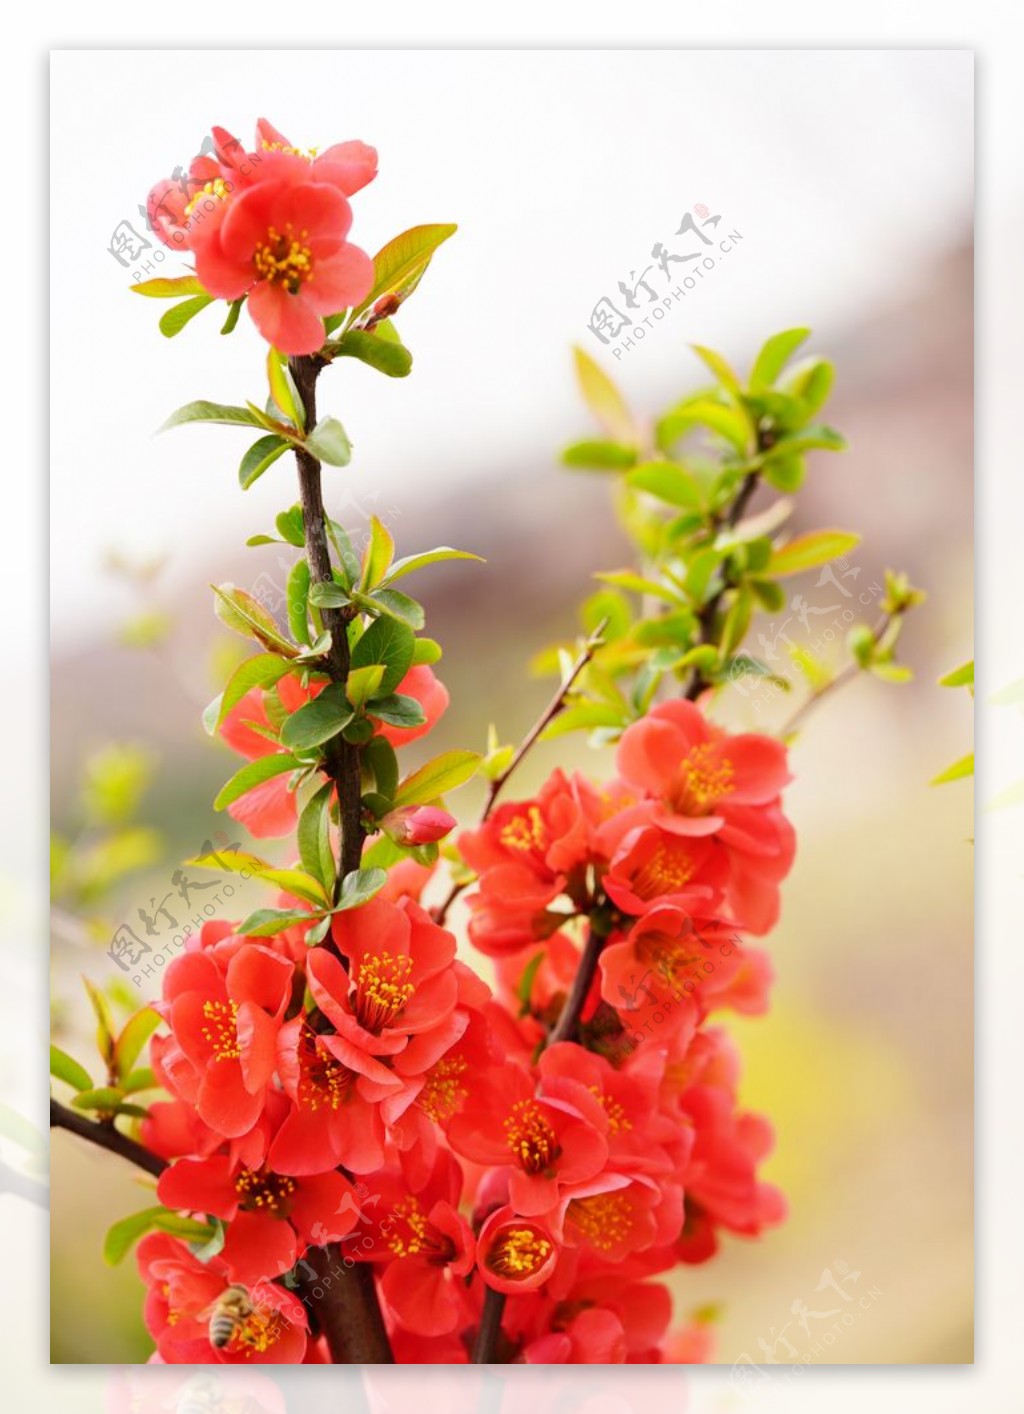 枚红色海棠花高清大图图片